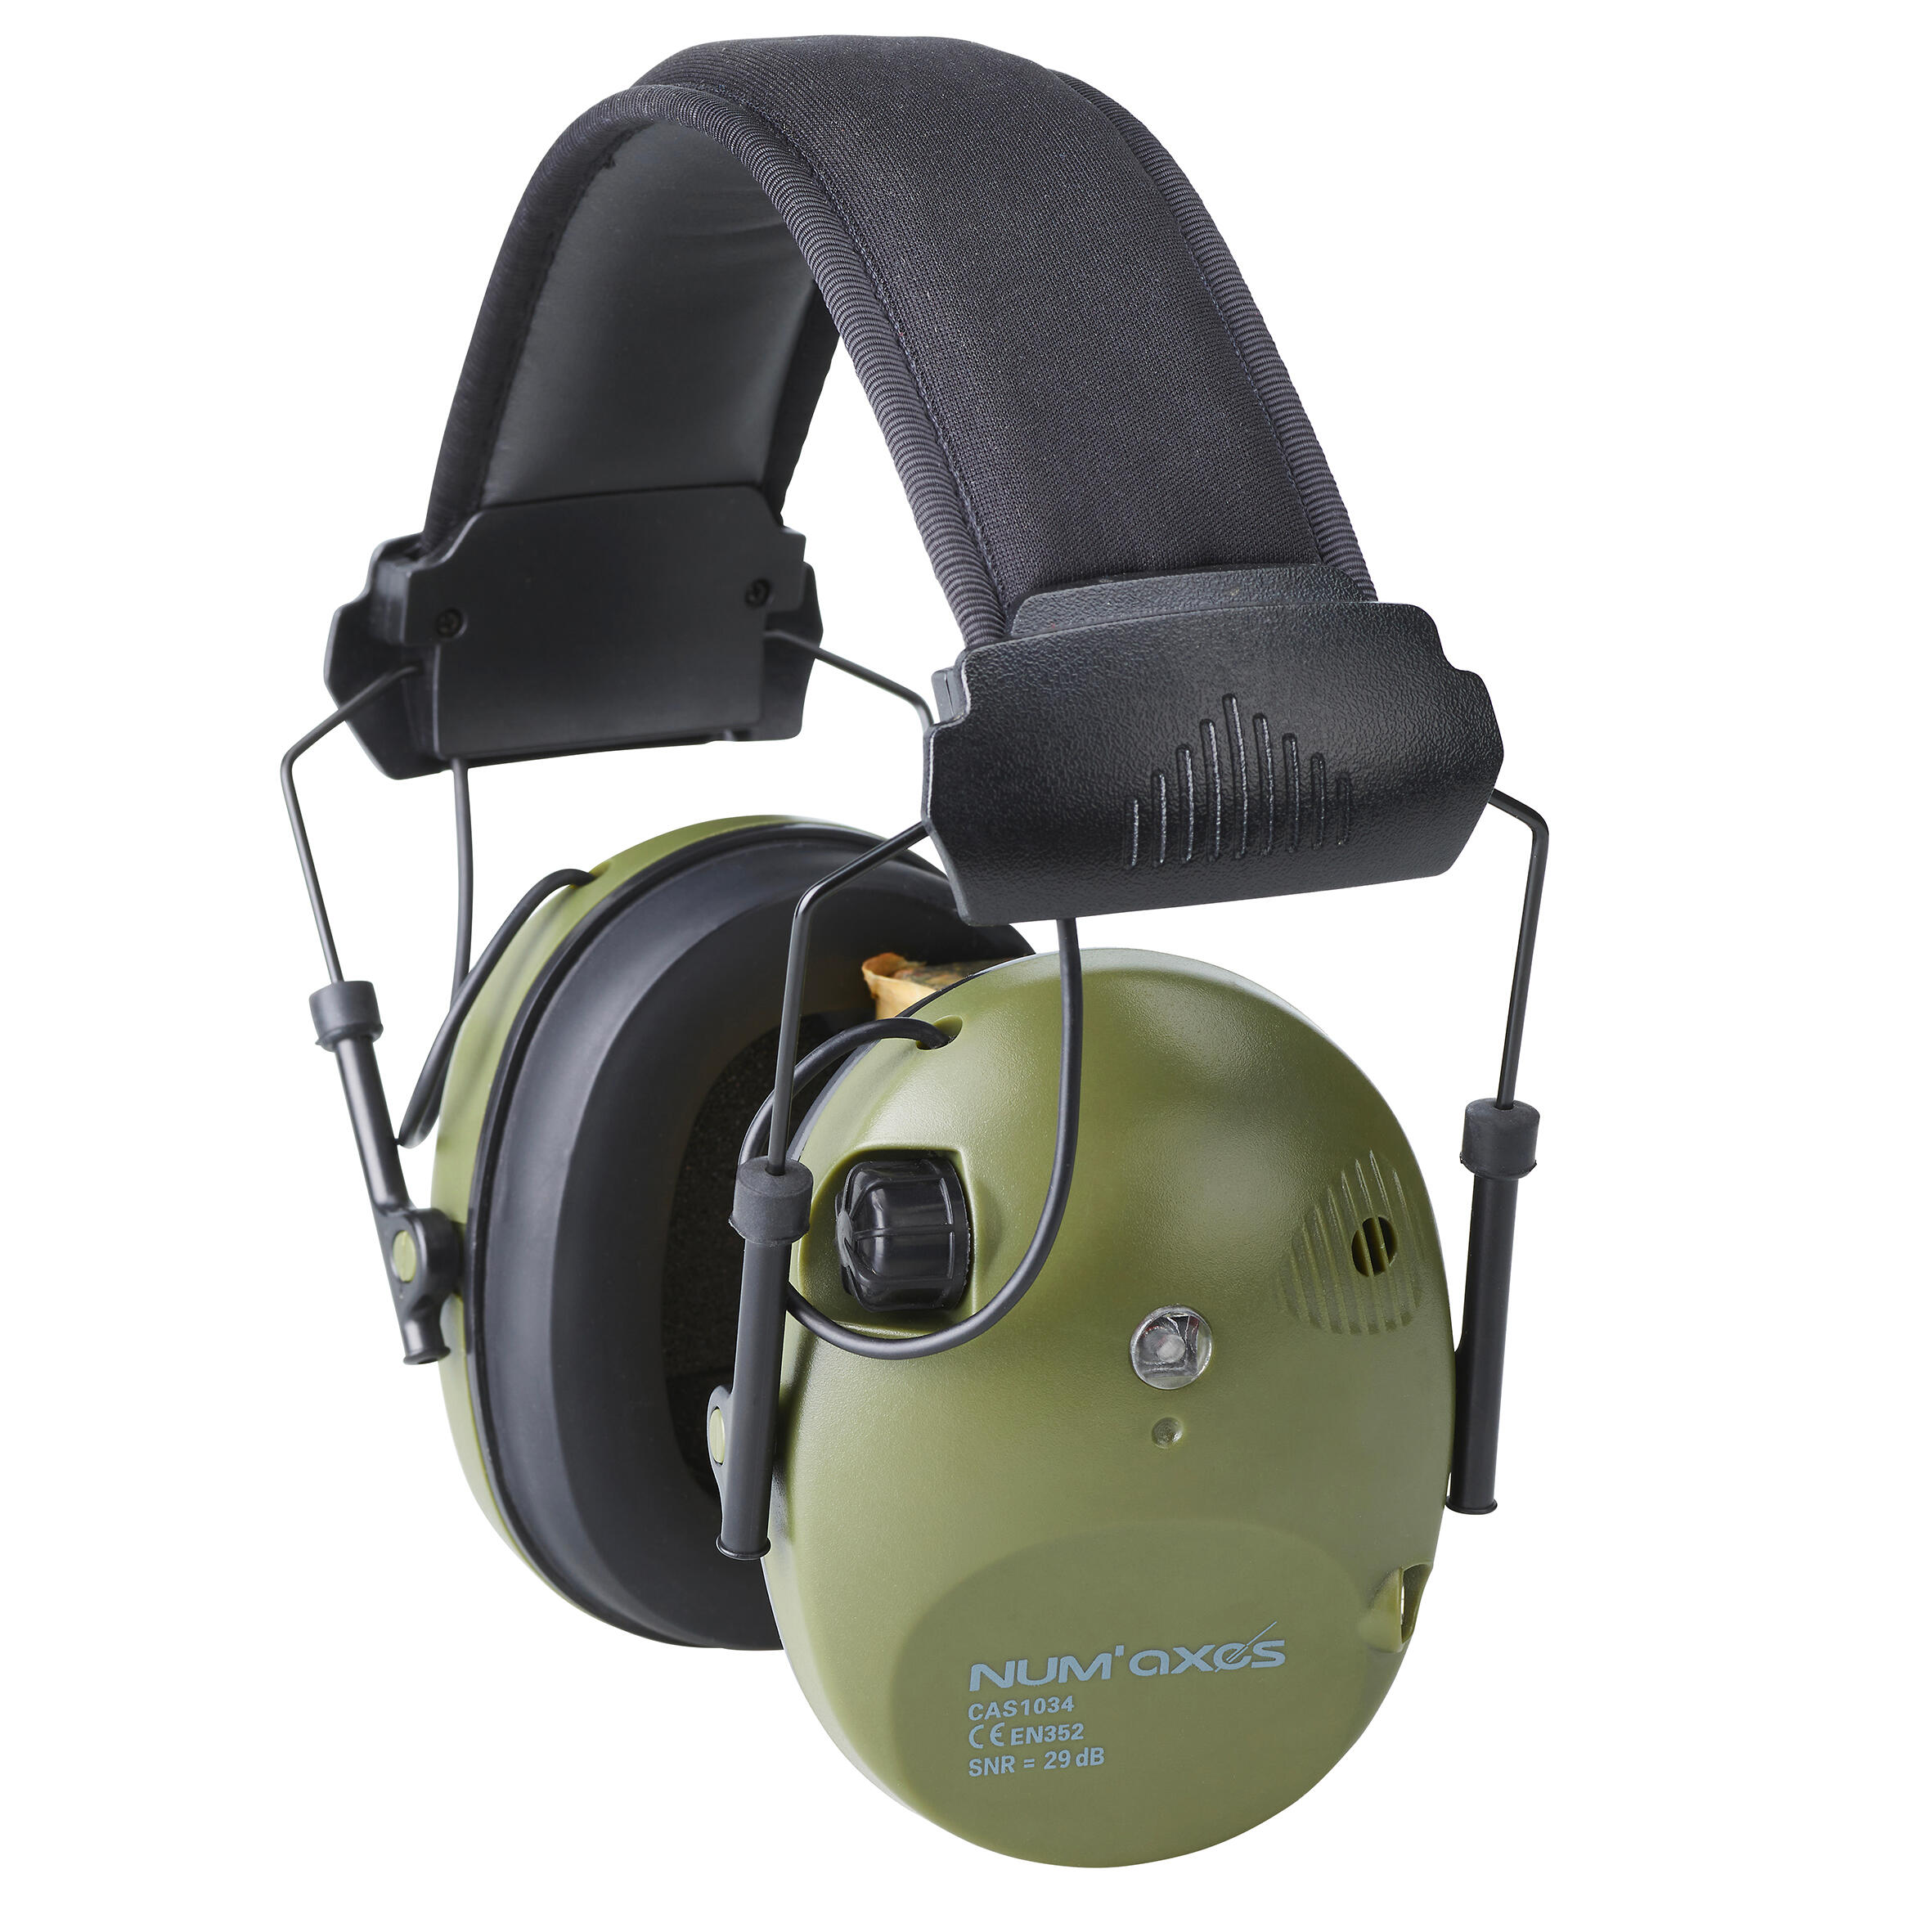 Cască de protecție auditivă electronică anti-zgomot CAS1034 Num Axes